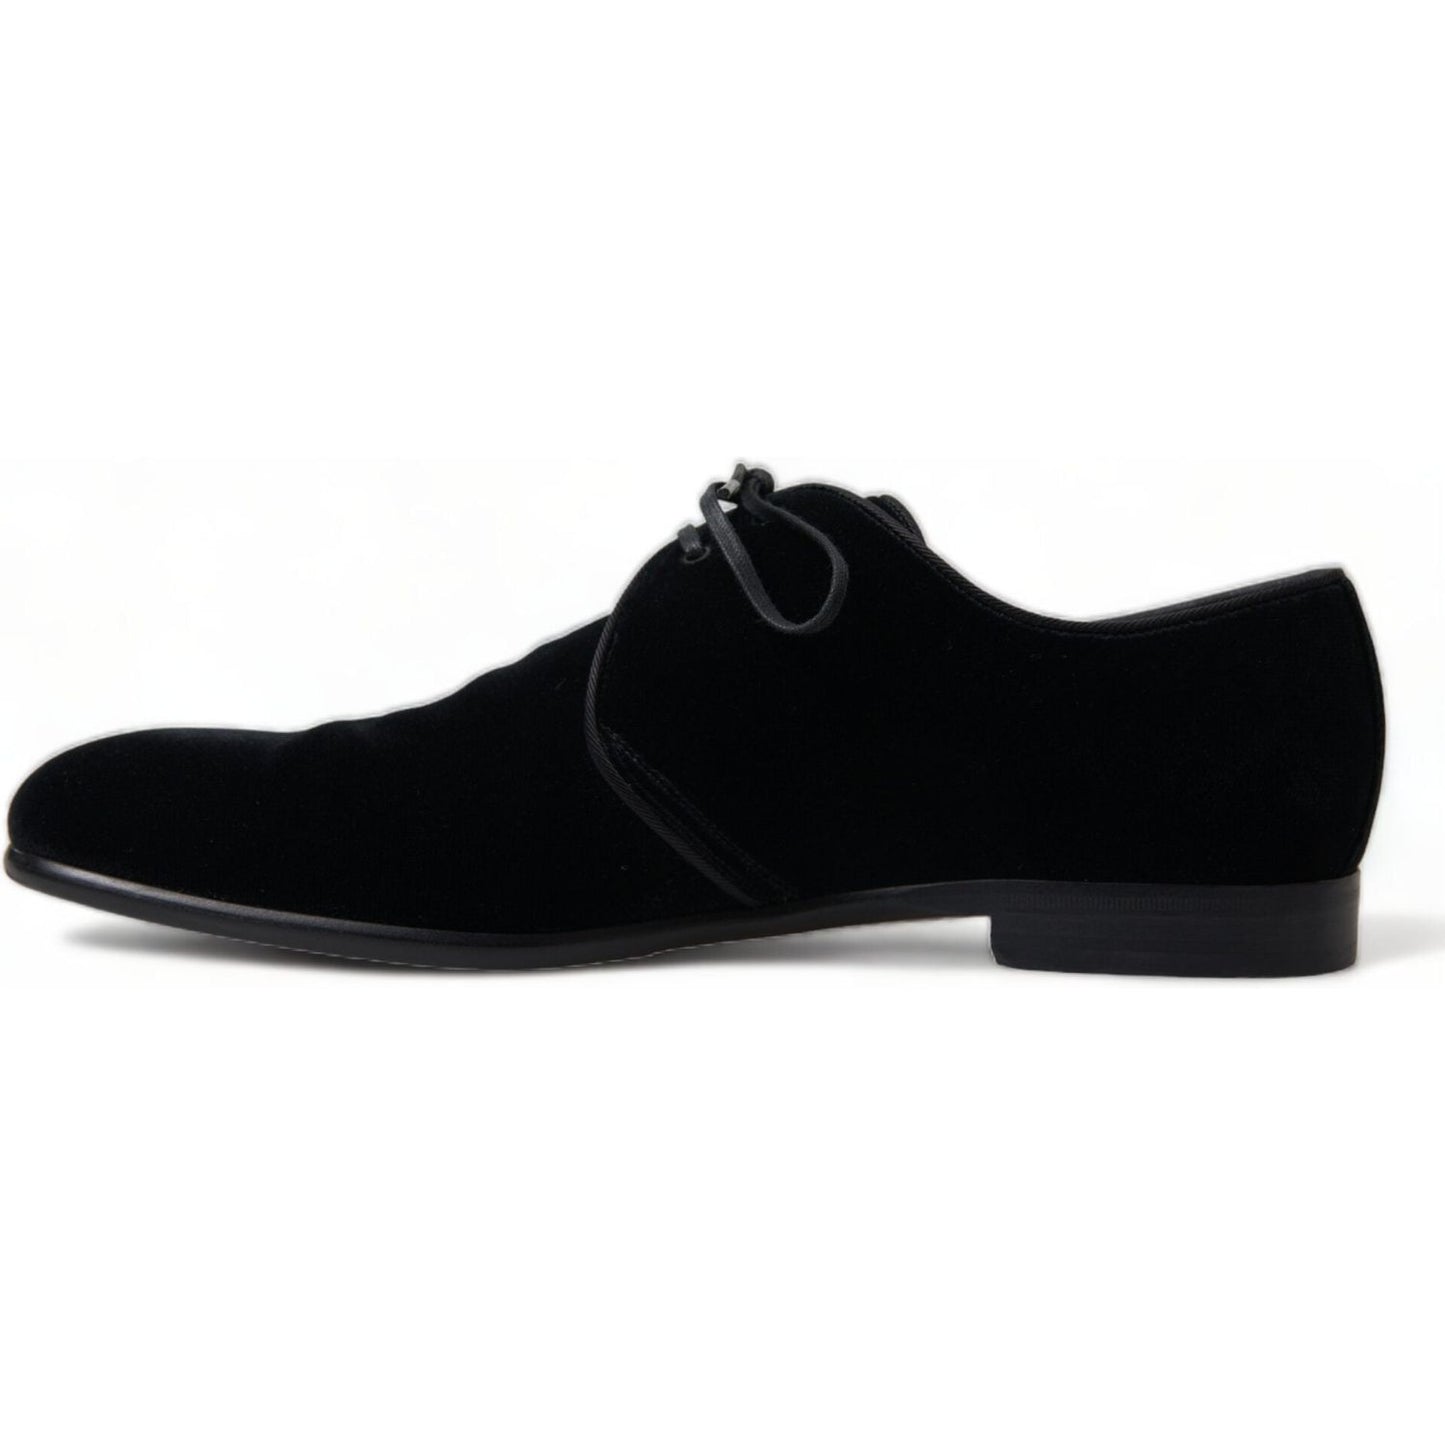 Dolce & Gabbana Elegant Black Velvet Derby Dress Shoes black-velvet-lace-up-formal-derby-dress-shoes